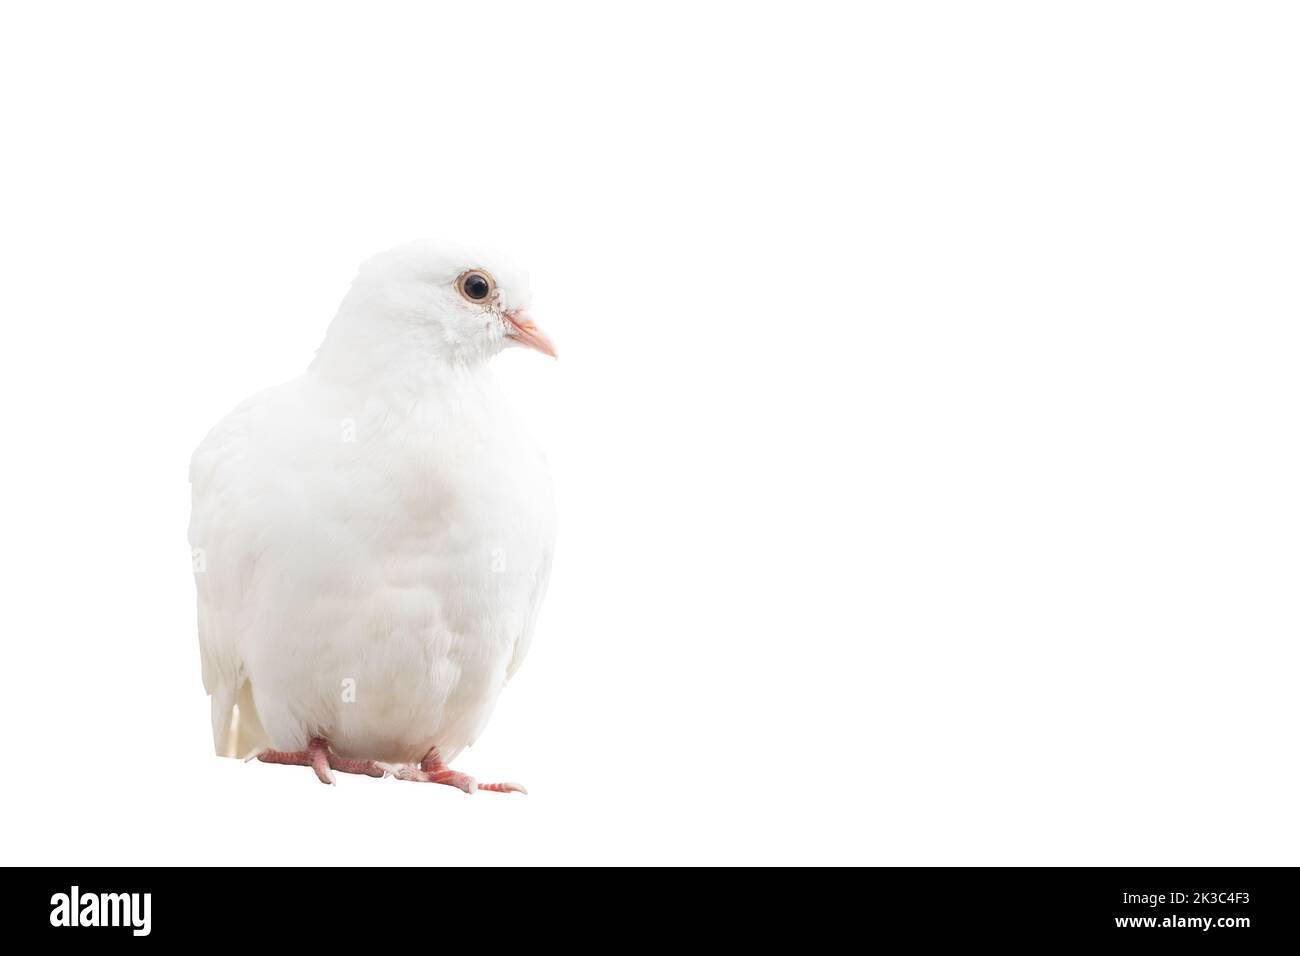 white dove sitting, isolated on white background Stock Photo